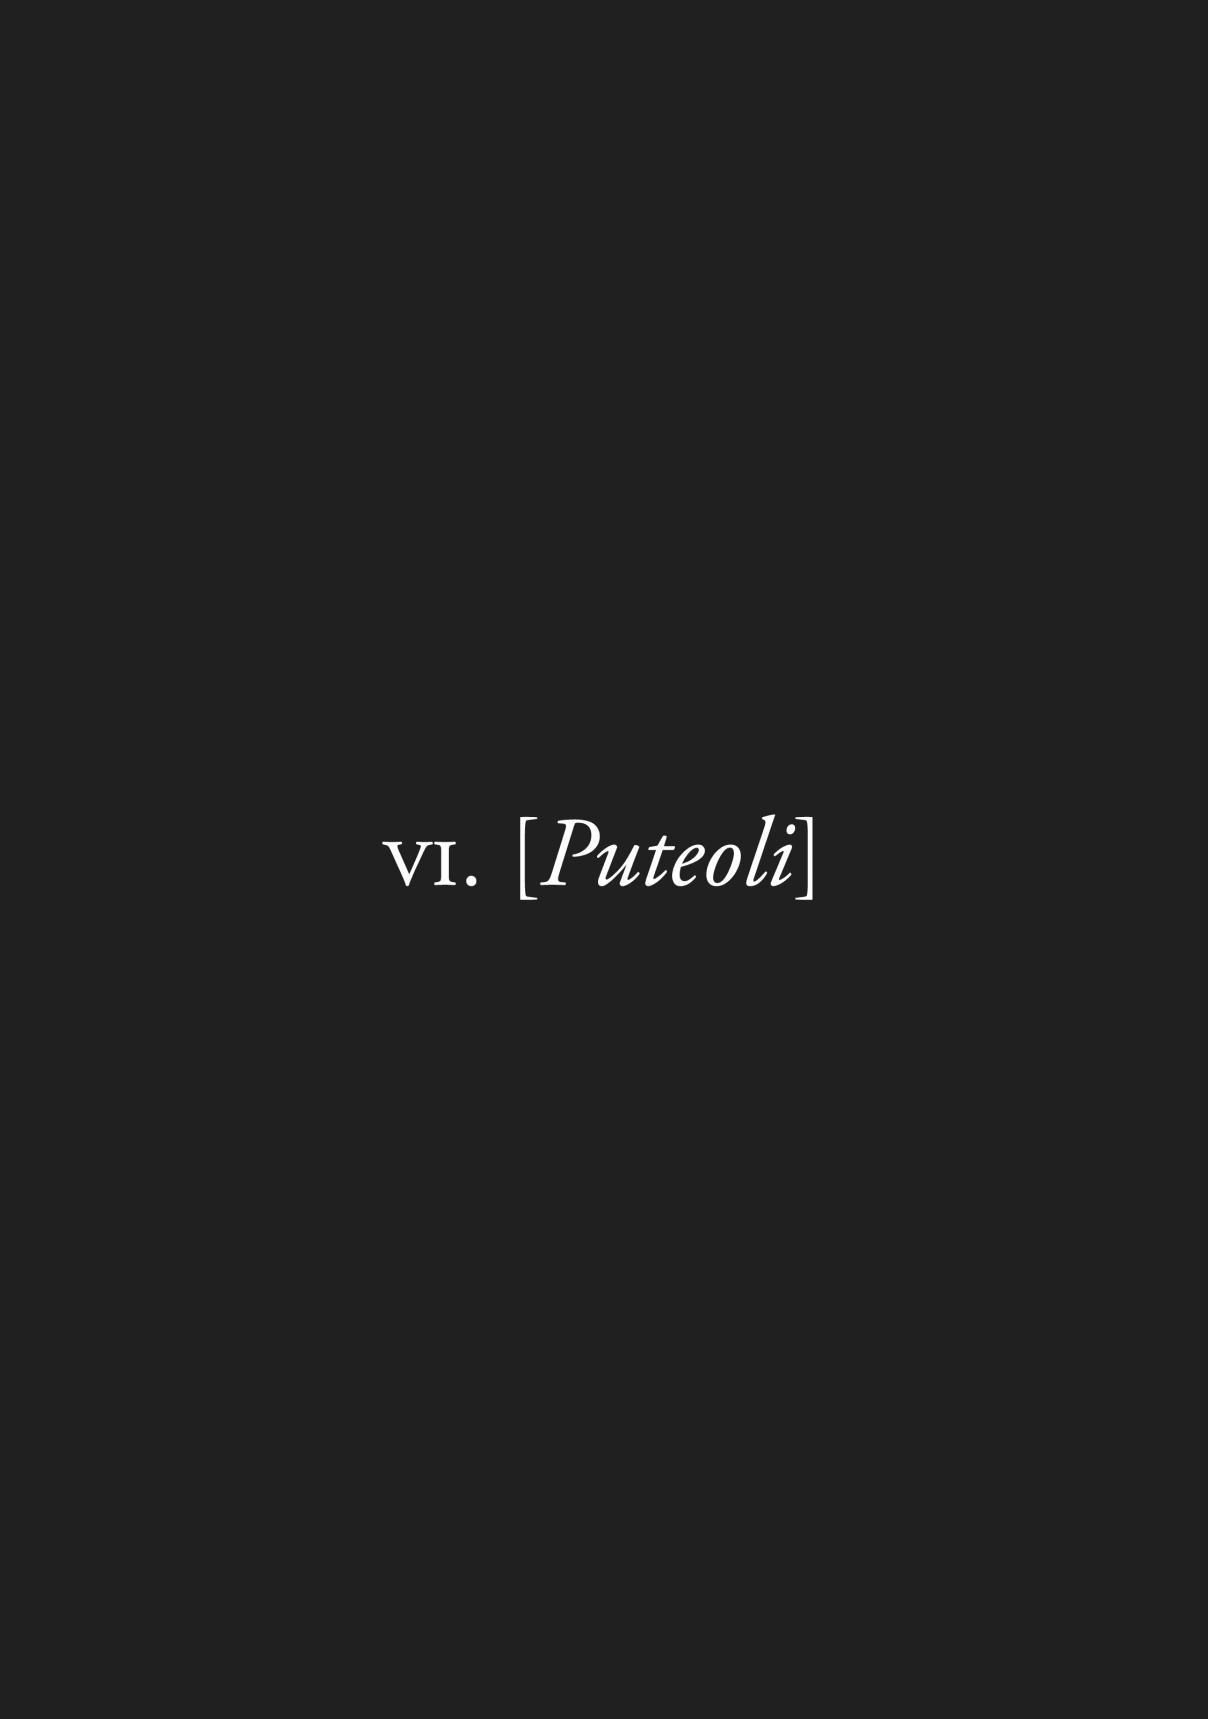 Plinivs Vol. 1 Ch. 6 Puteoli